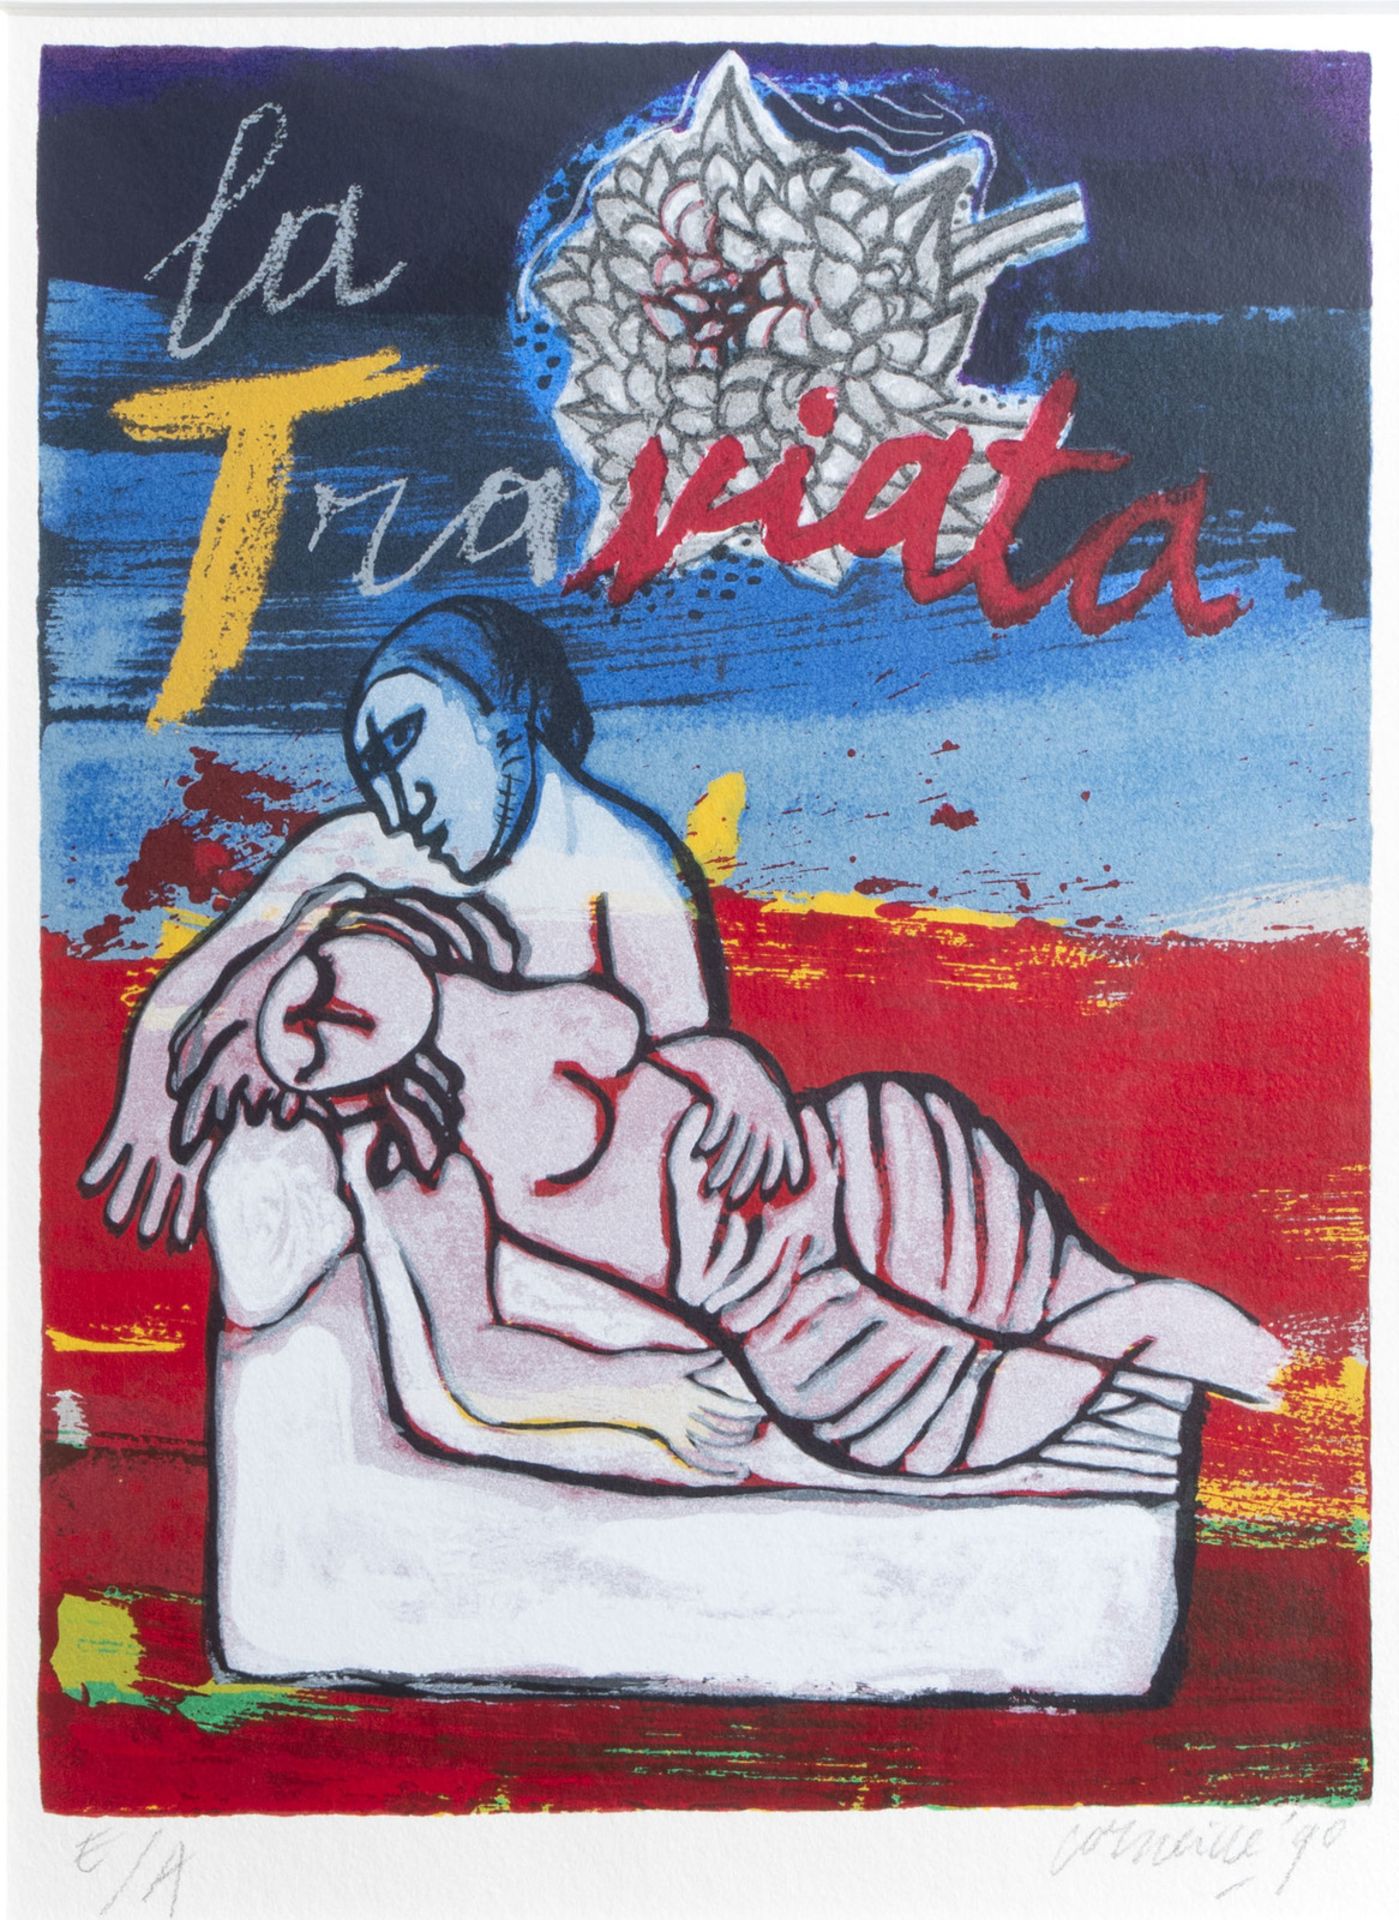 Guillaume Corneille van Beverloo (Corneille, 1922-2010): 'La Traviata', lithograph in colours, ed. E